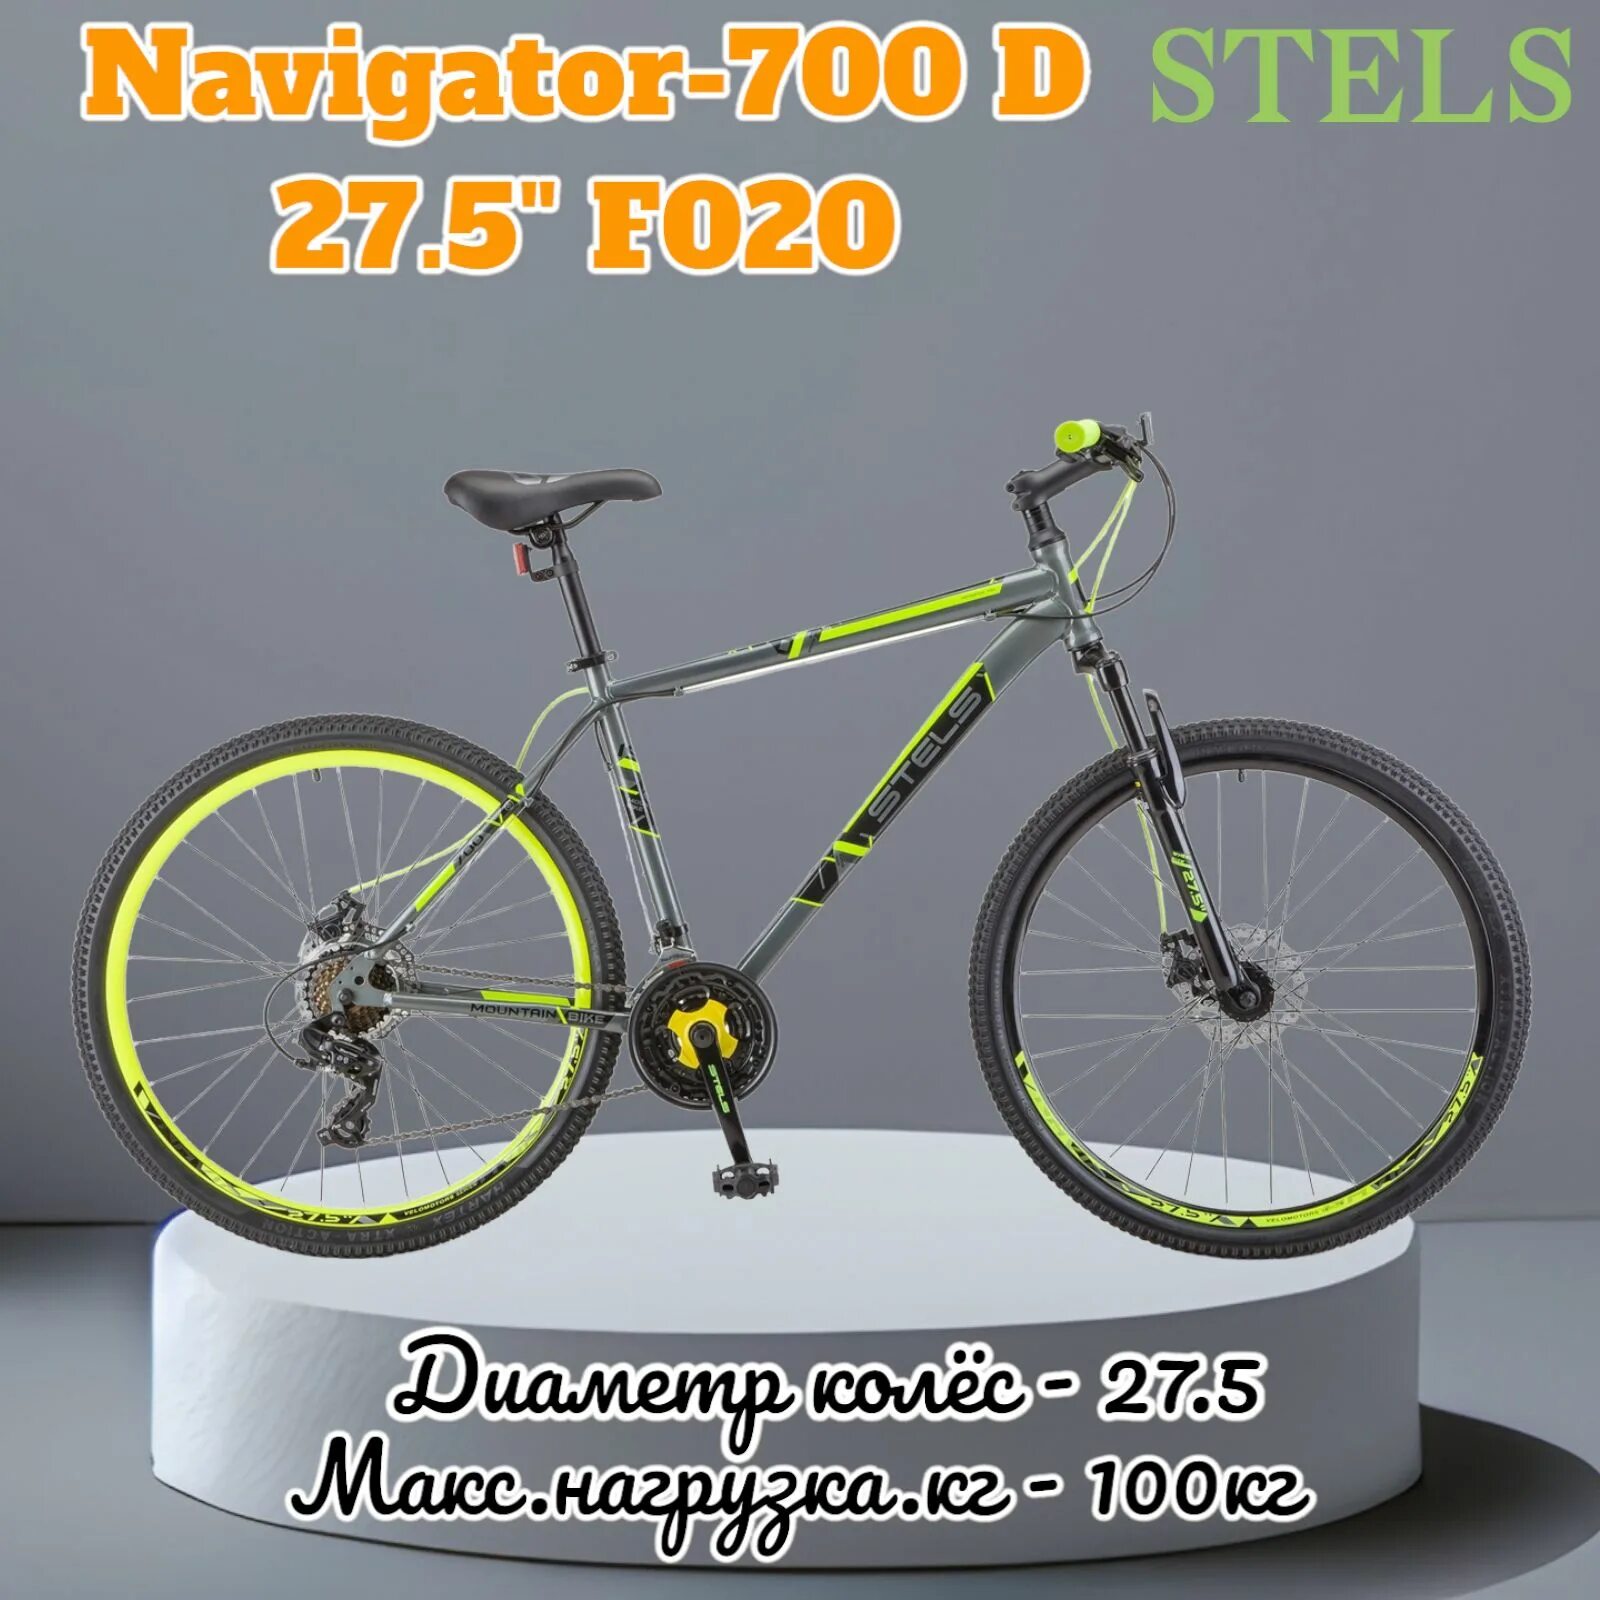 Стелс 700 мд. Велосипед стелс навигатор 700 МД. Navigator-700 MD 27.5" f020. Велосипед горный stels Navigator 700 MD 27.5" f020. Stels Navigator 700 d 27.5.